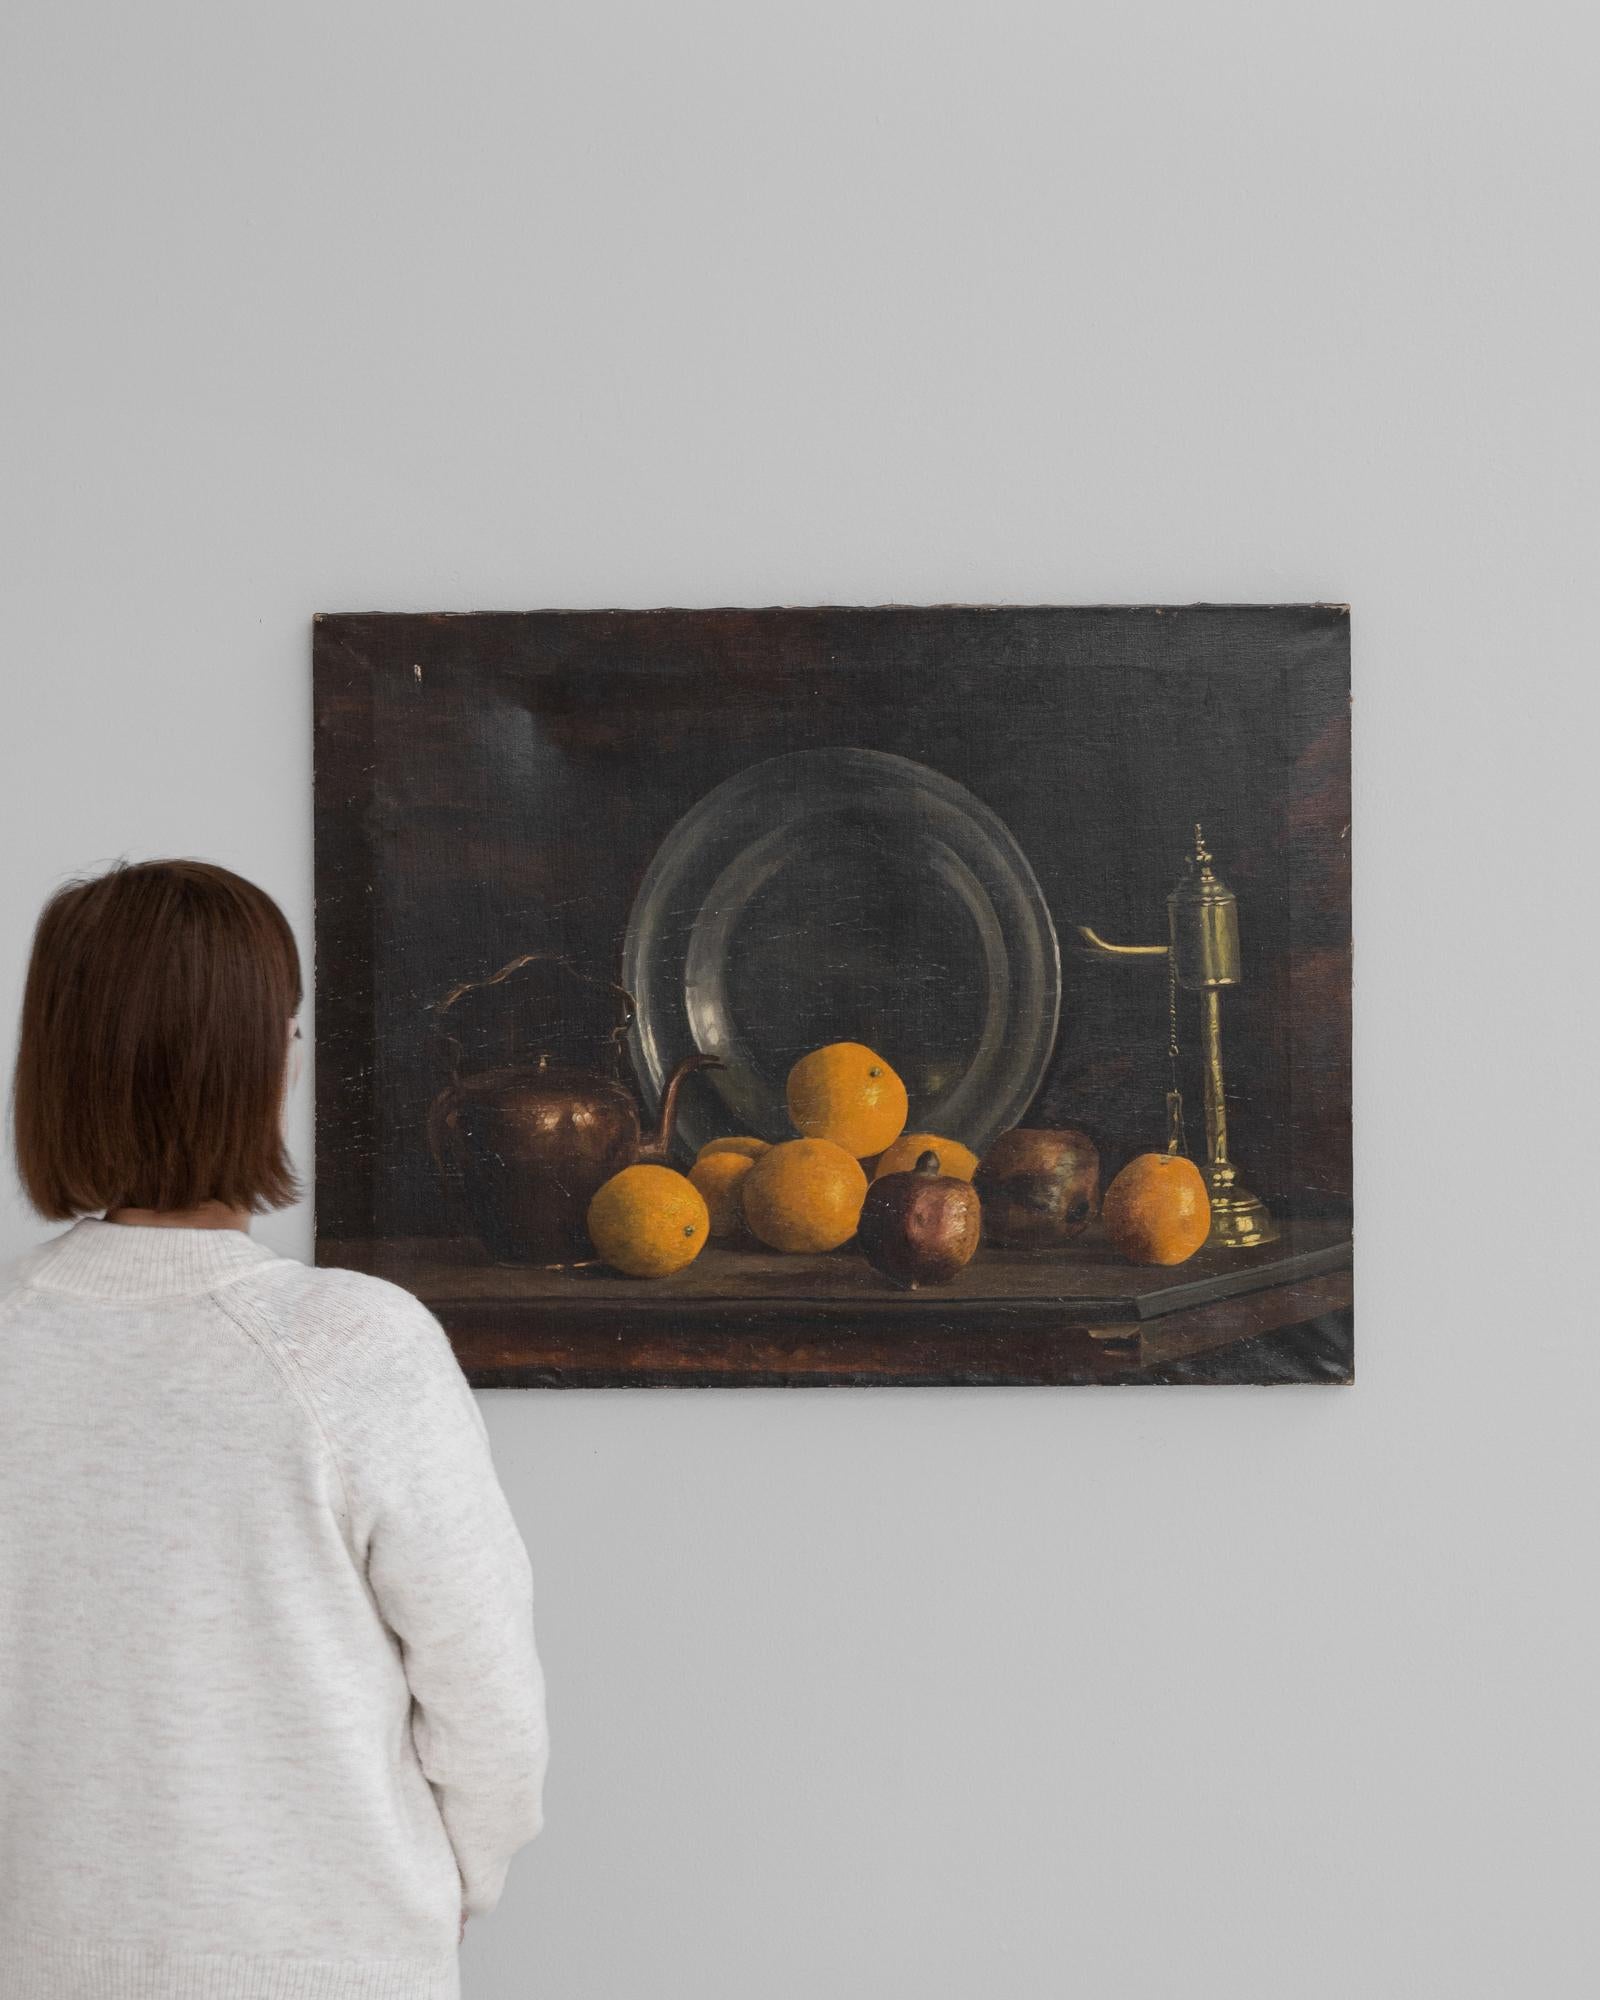 Dieses belgische Gemälde aus dem frühen 20. Jahrhundert ist ein klassisches Stillleben, das vom Können und der subtilen Brillanz seines Schöpfers zeugt. Vor einem dunklen, unauffälligen Hintergrund lässt die Komposition jedes Element mit einer